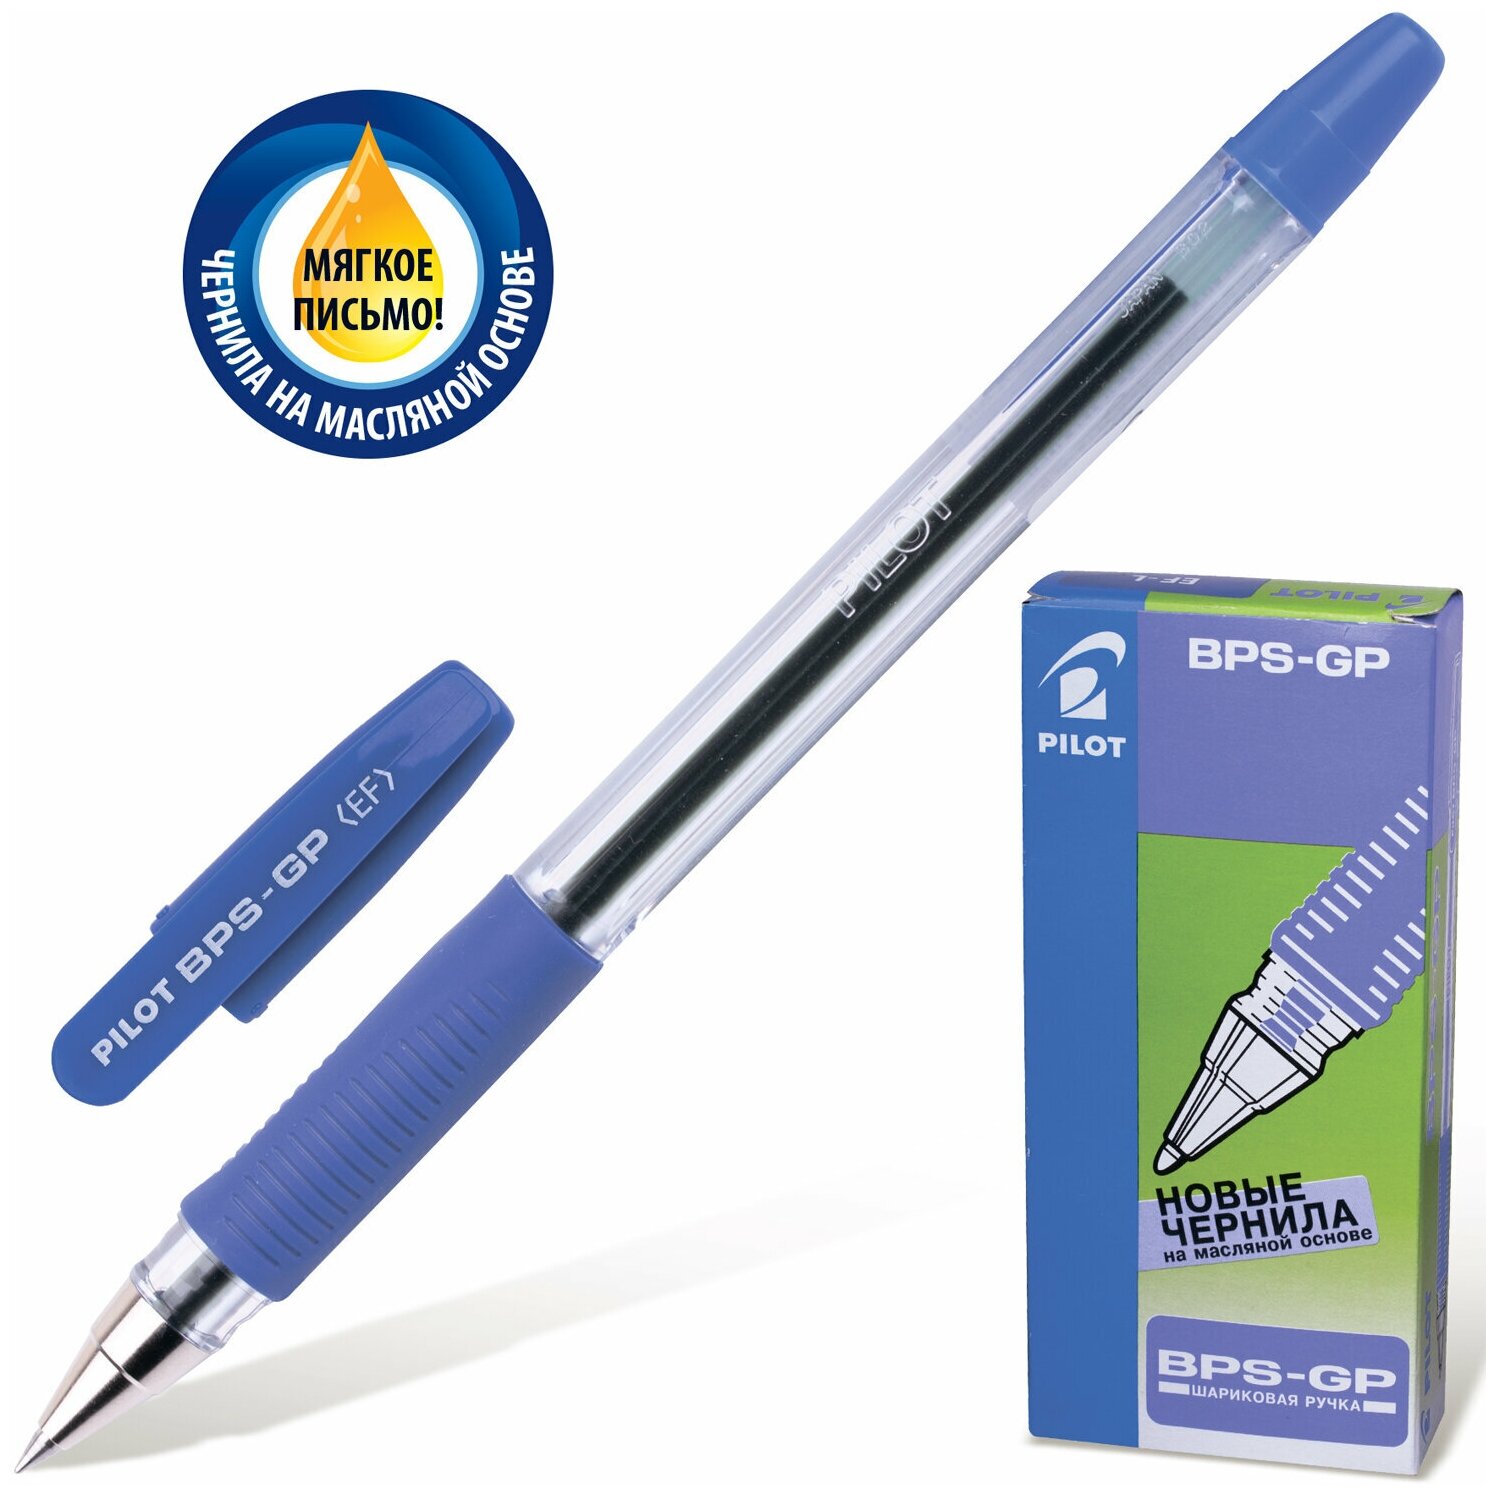 Ручки шариковые масляные набор / комплект Pilot Bps-gp, 12 штук, Синяя, узел 0,5мм, линия 0,25мм, 880487